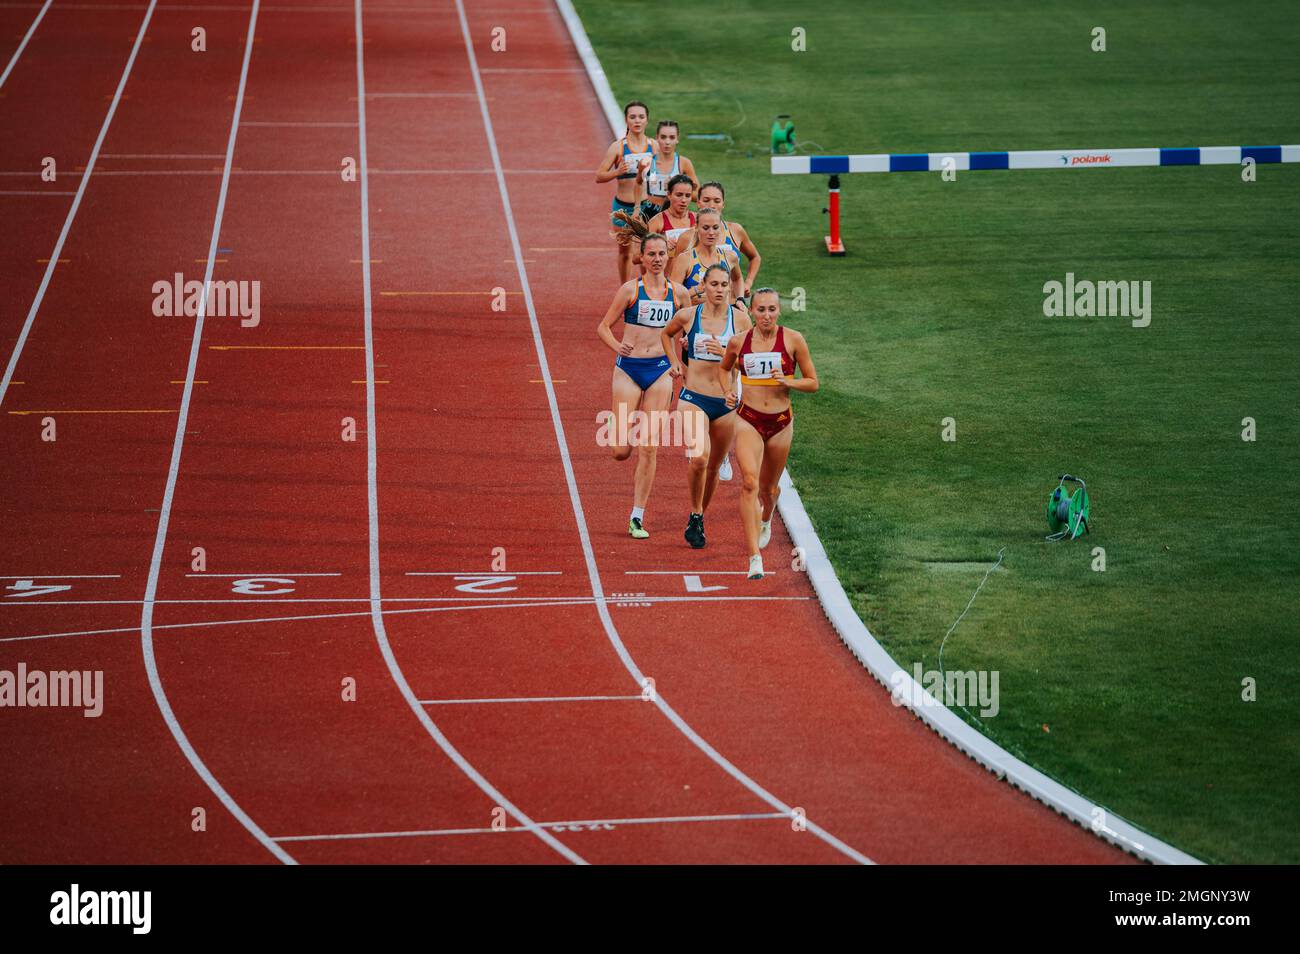 MARTIN, SLOVAQUIE, 16 JUILLET 2022 : image puissante des athlètes féminines capturées en mouvement lors d'une course de 1500m, mettant en valeur la puissance et la grâce de l'homme Banque D'Images